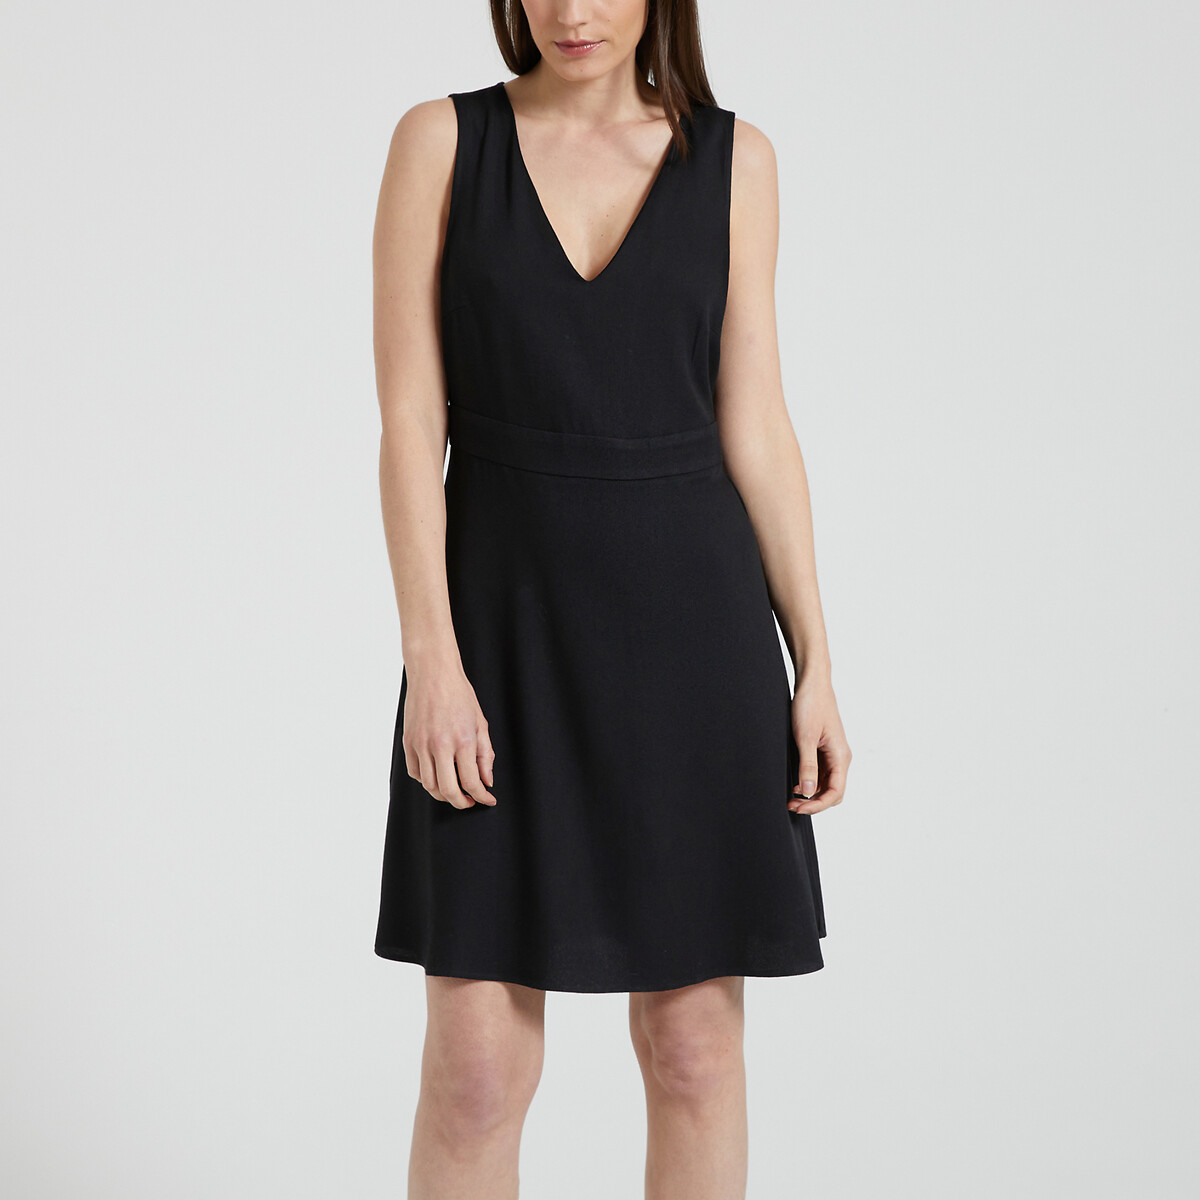 Платье короткое со спинкой из кружева  46 черный LaRedoute, размер 46 - фото 1